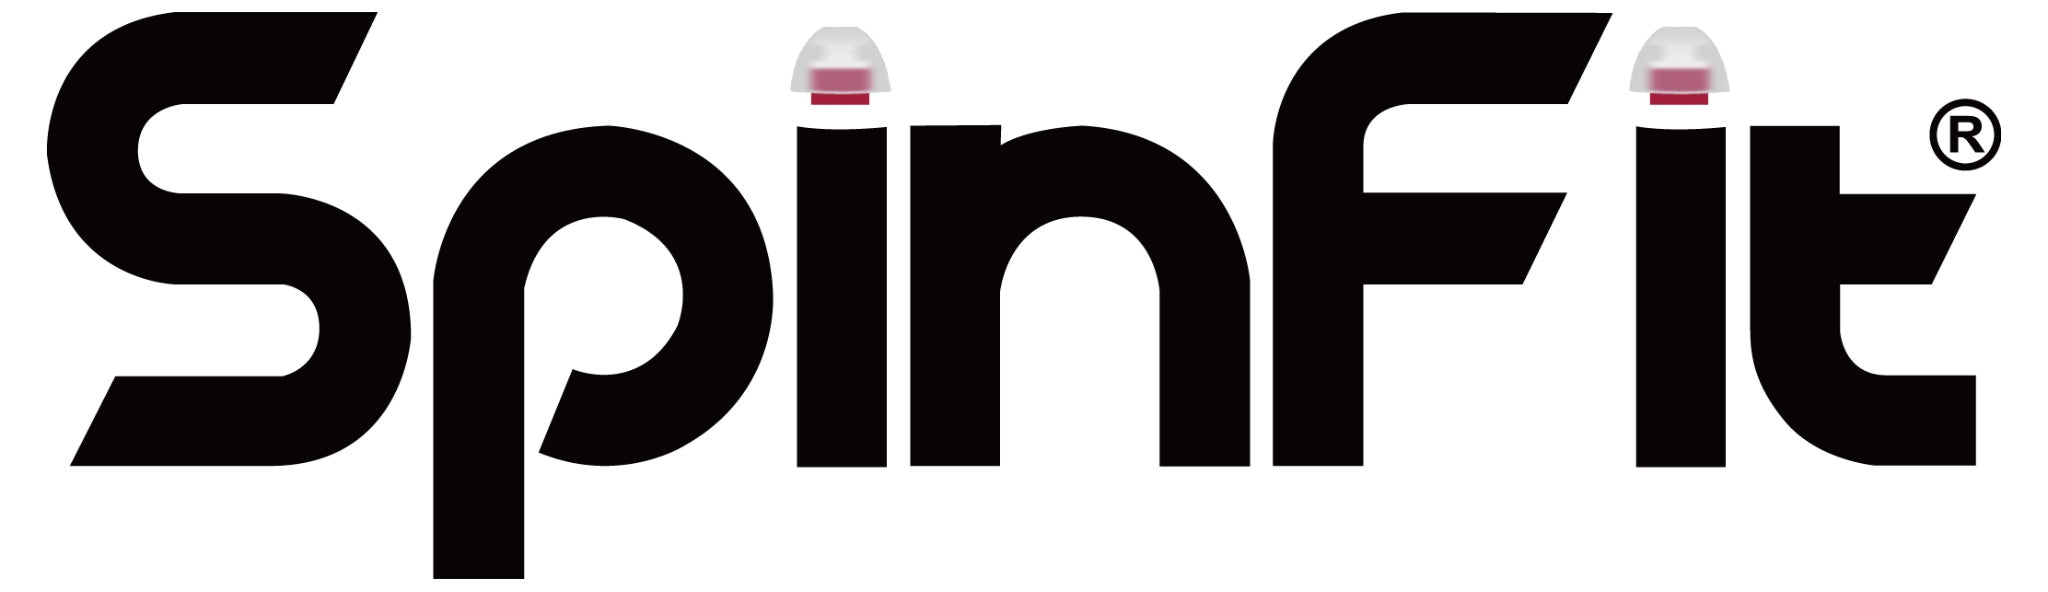 SpinFit logo black